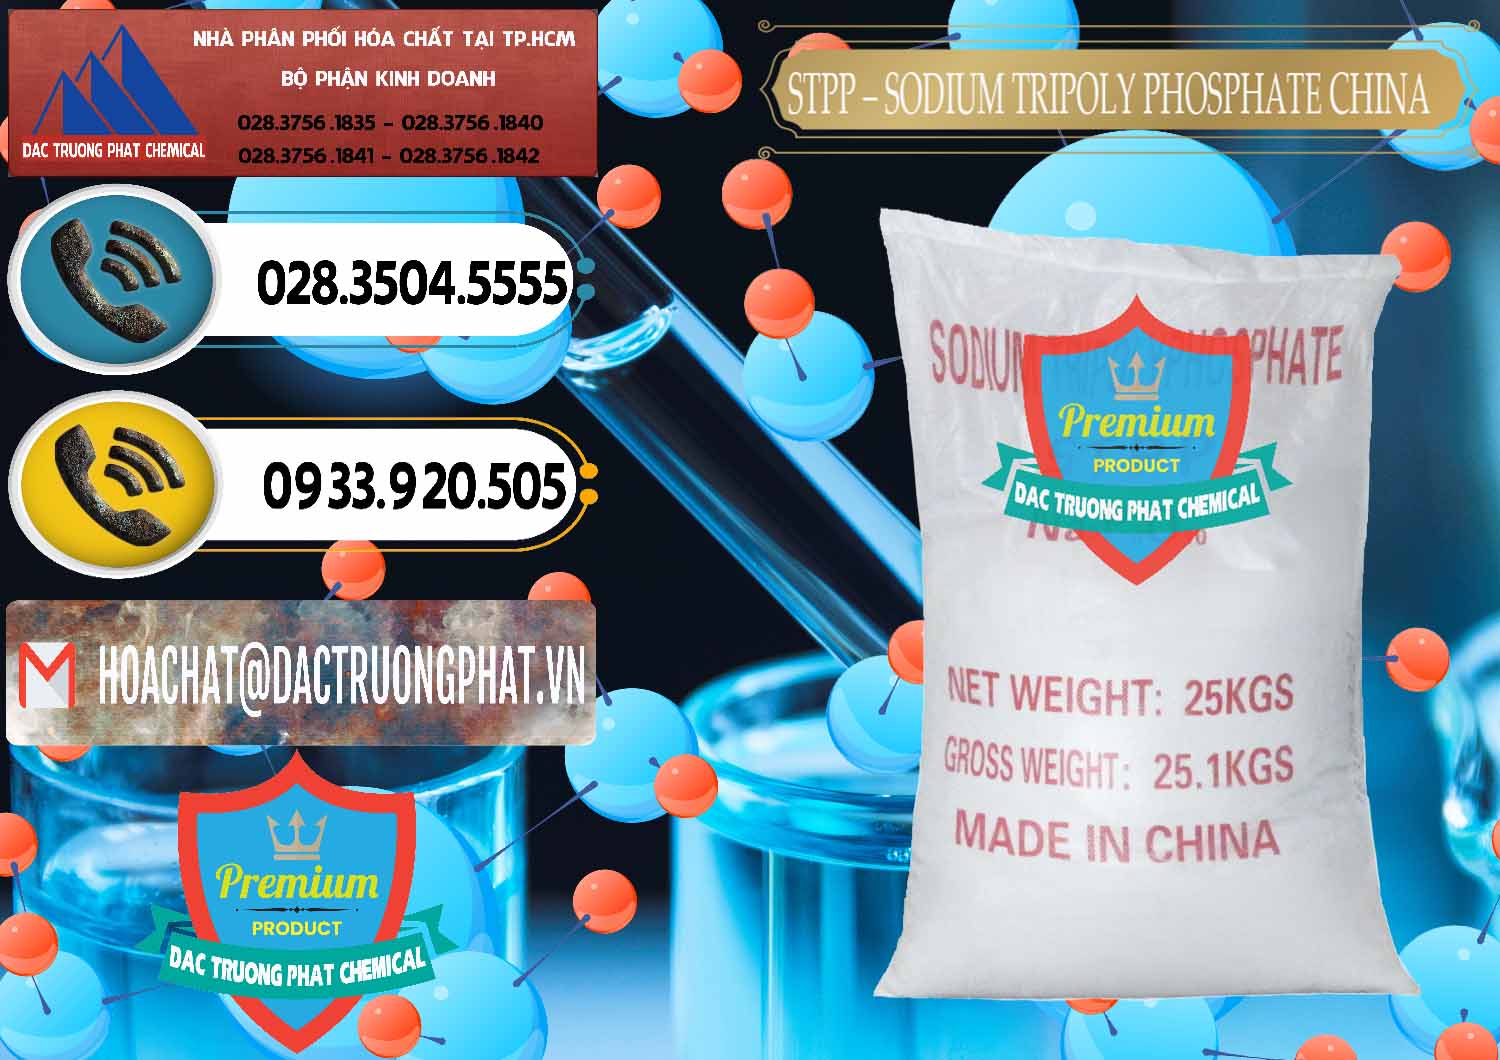 Cung cấp _ bán Sodium Tripoly Phosphate - STPP 96% Chữ Đỏ Trung Quốc China - 0155 - Đơn vị chuyên cung cấp _ kinh doanh hóa chất tại TP.HCM - hoachatdetnhuom.vn